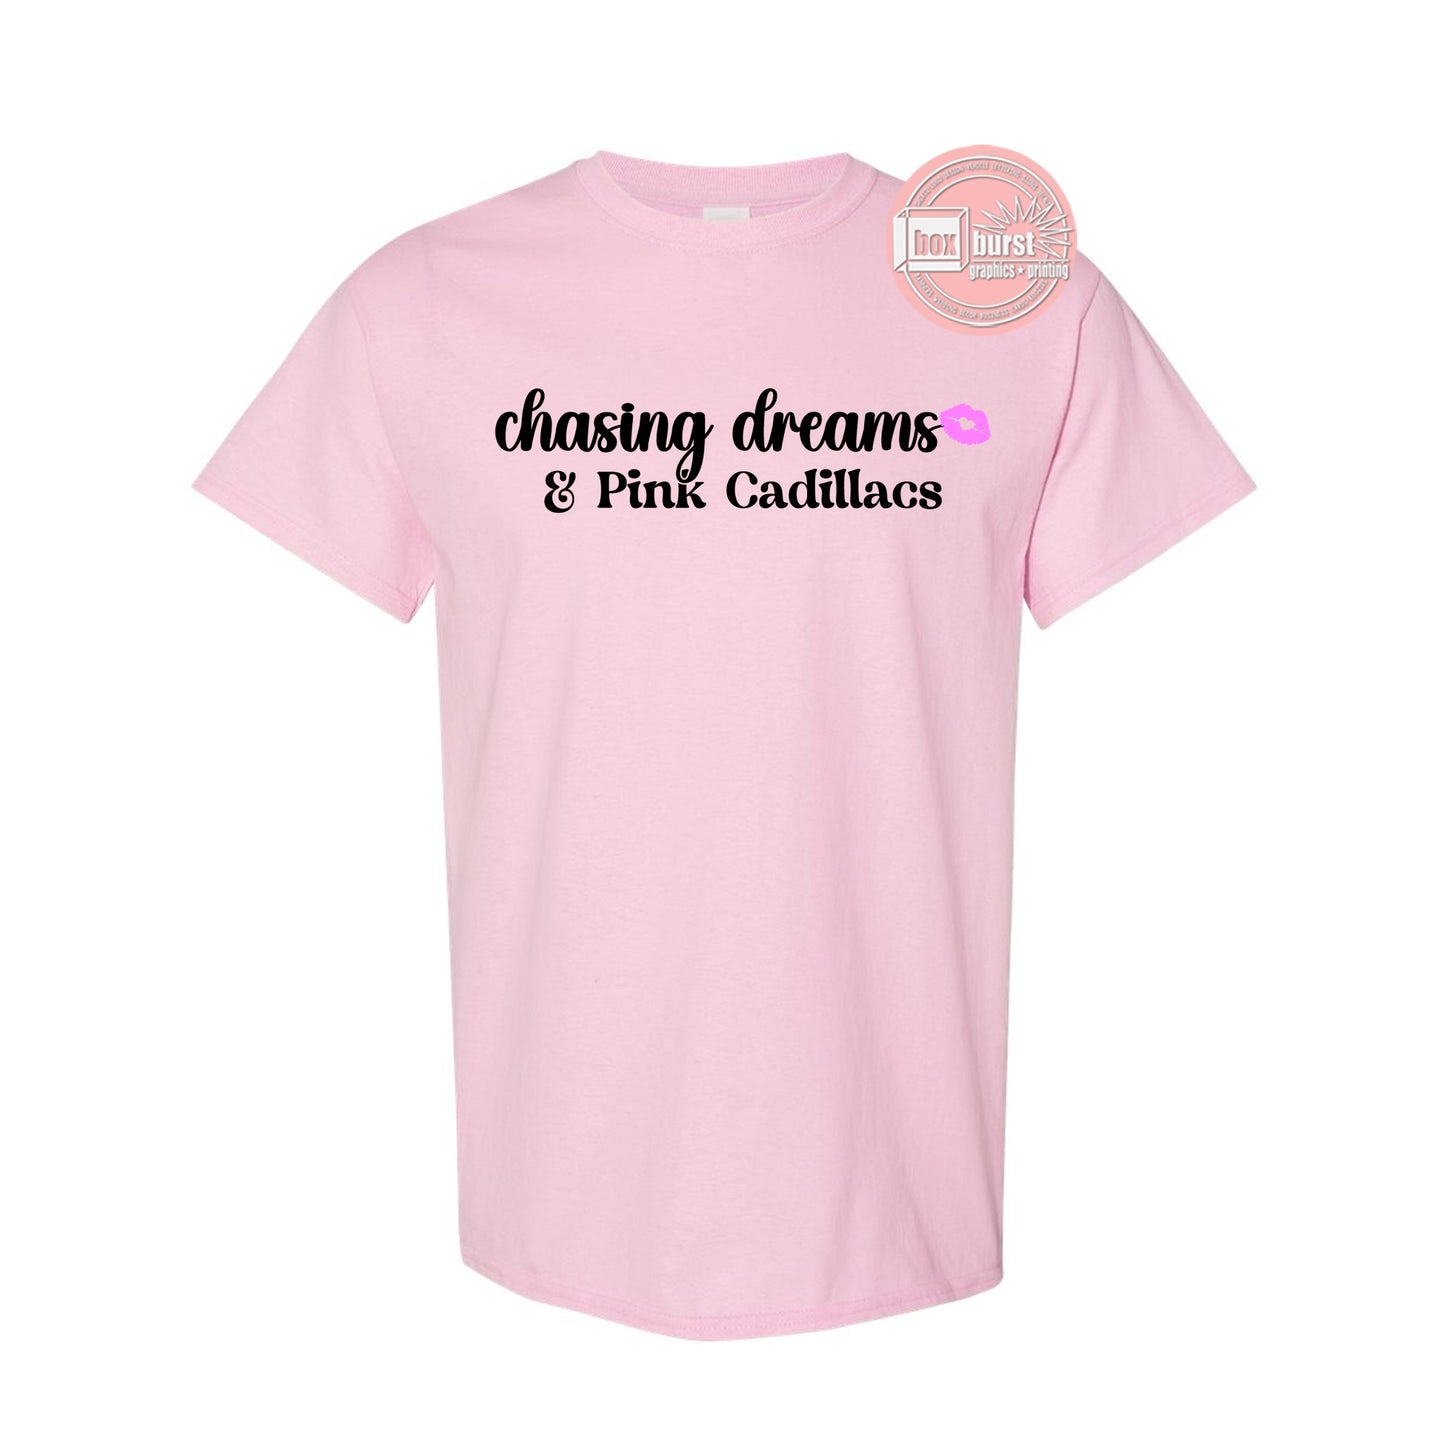 Chasing Dreams and Pink Cadillacs shirt